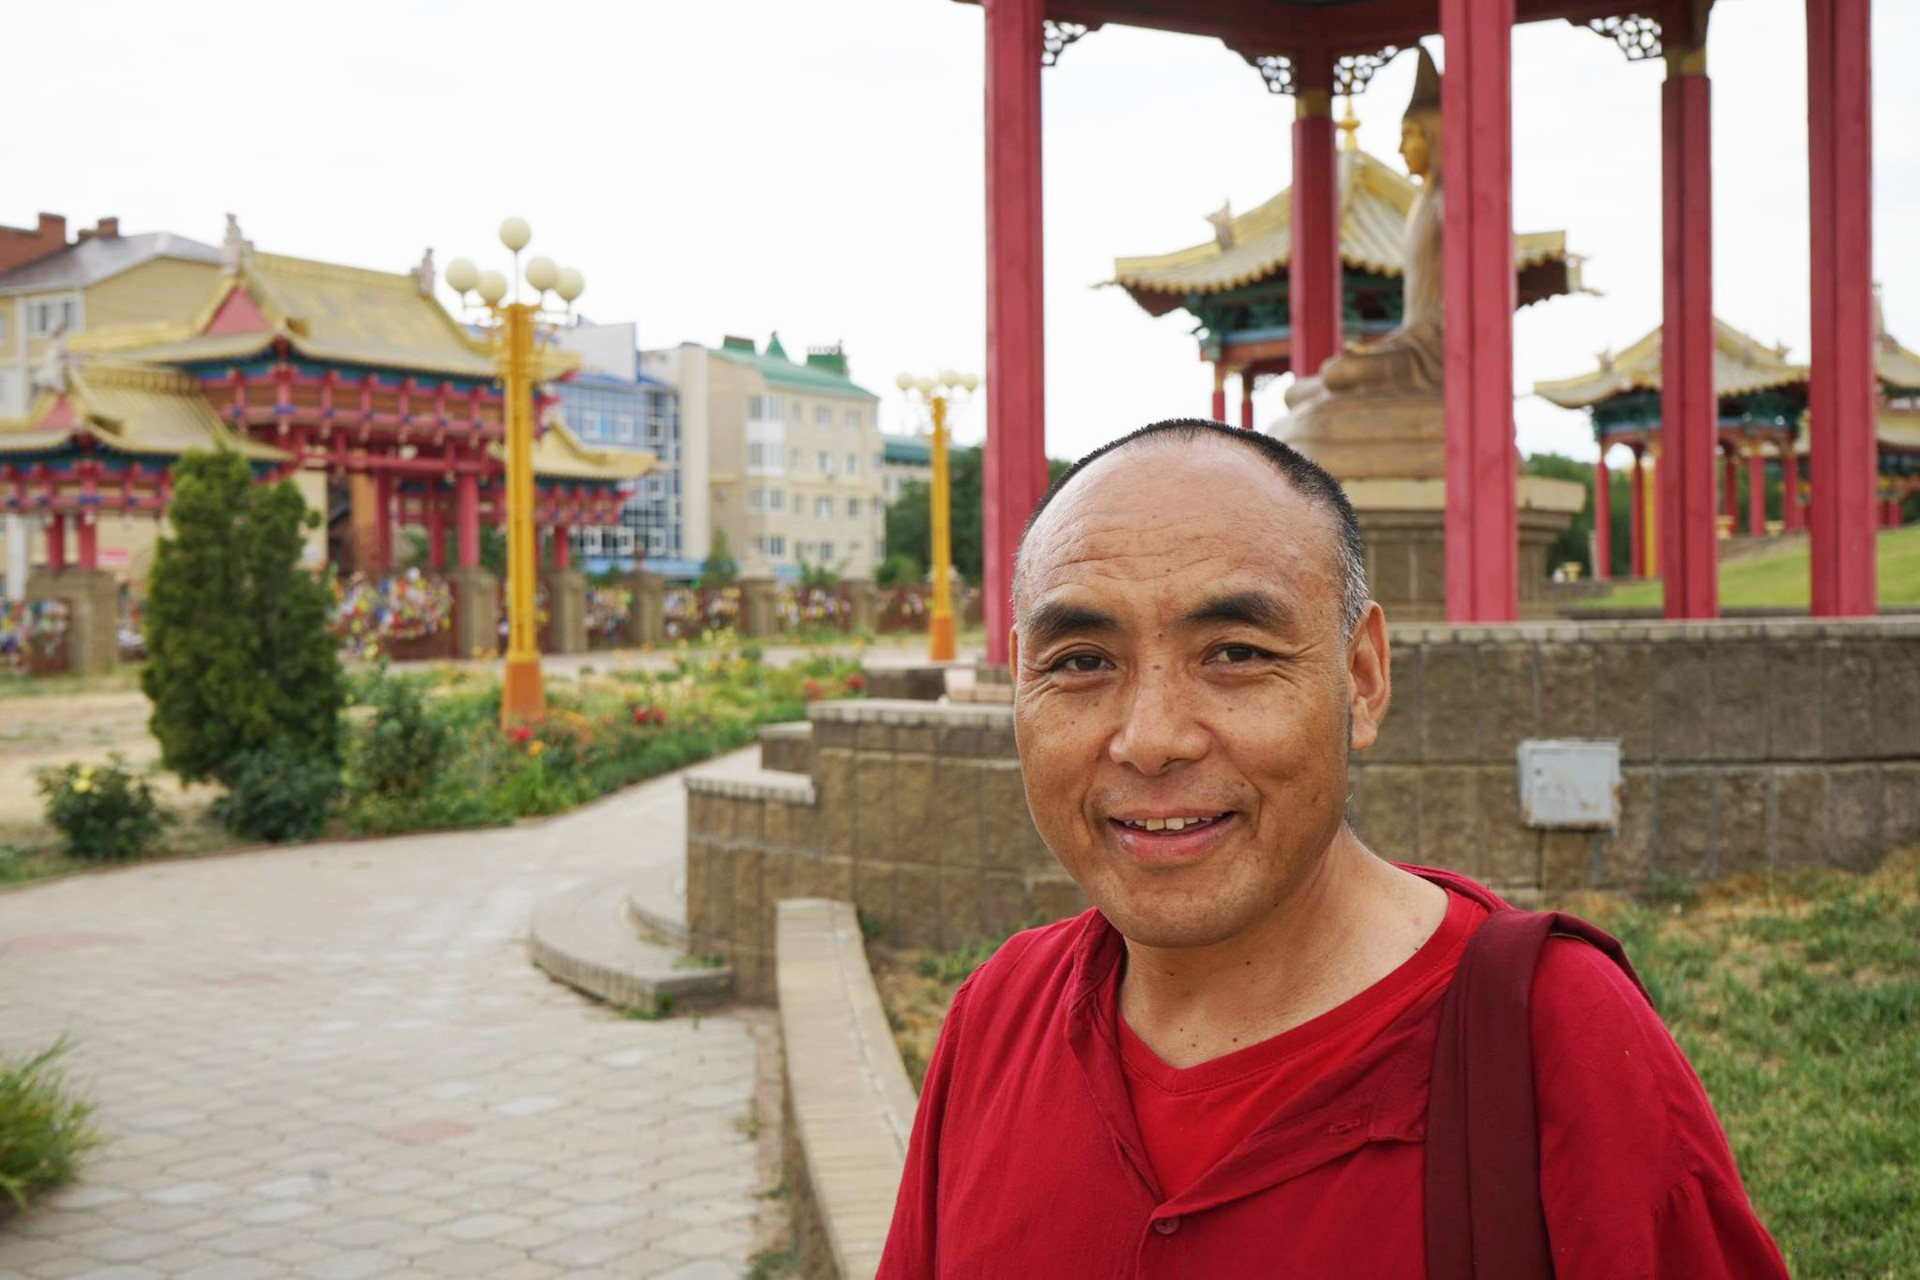 Gen Pen Tso je budistični menih iz Tibeta, ki od leta 2006 živi v Kalmikiji v južni Rusiji in dela v enem od templjev. Danes tekoče govori rusko in kalmiško, ima svoj vaški oltar in župnijo v Volgograjski regiji.